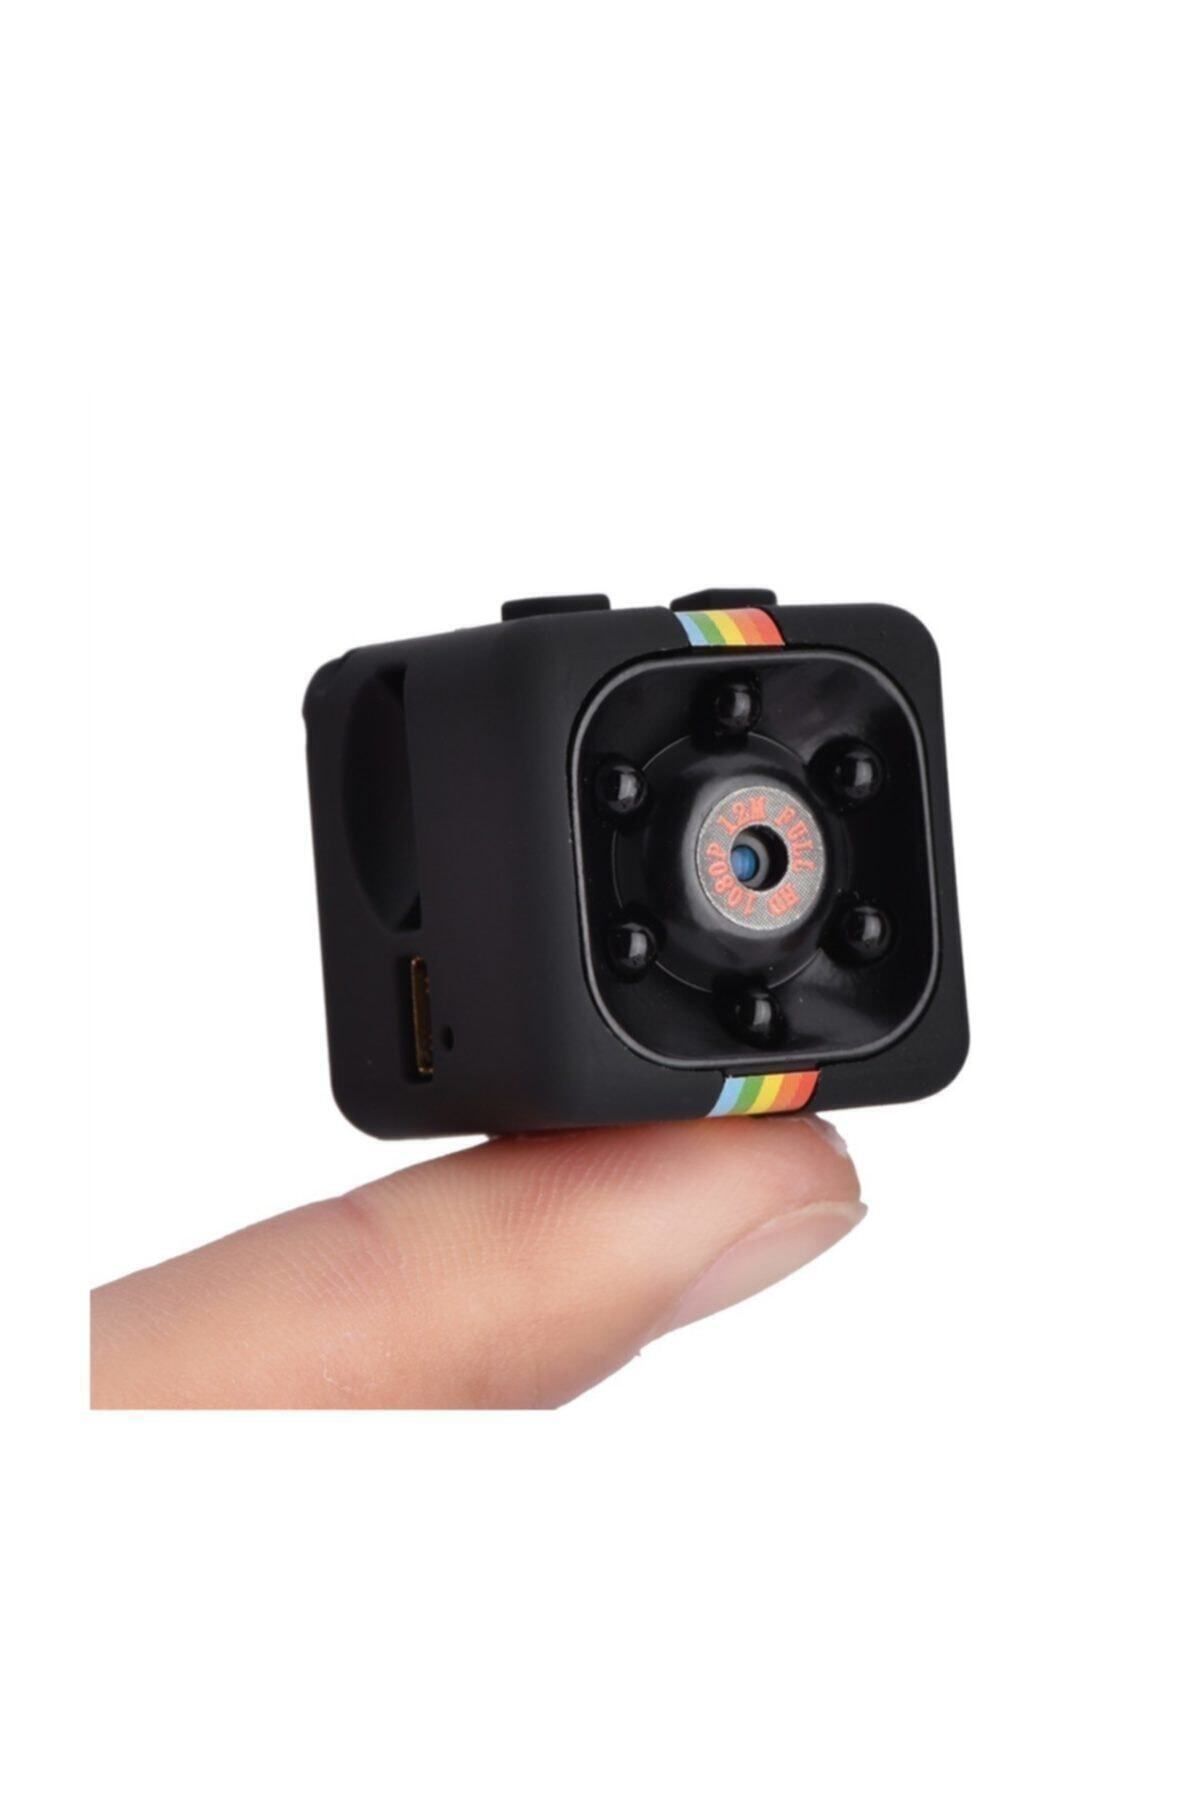 Generica Mini Kamera Sq11 Ultra Küçük Mikro Kamera